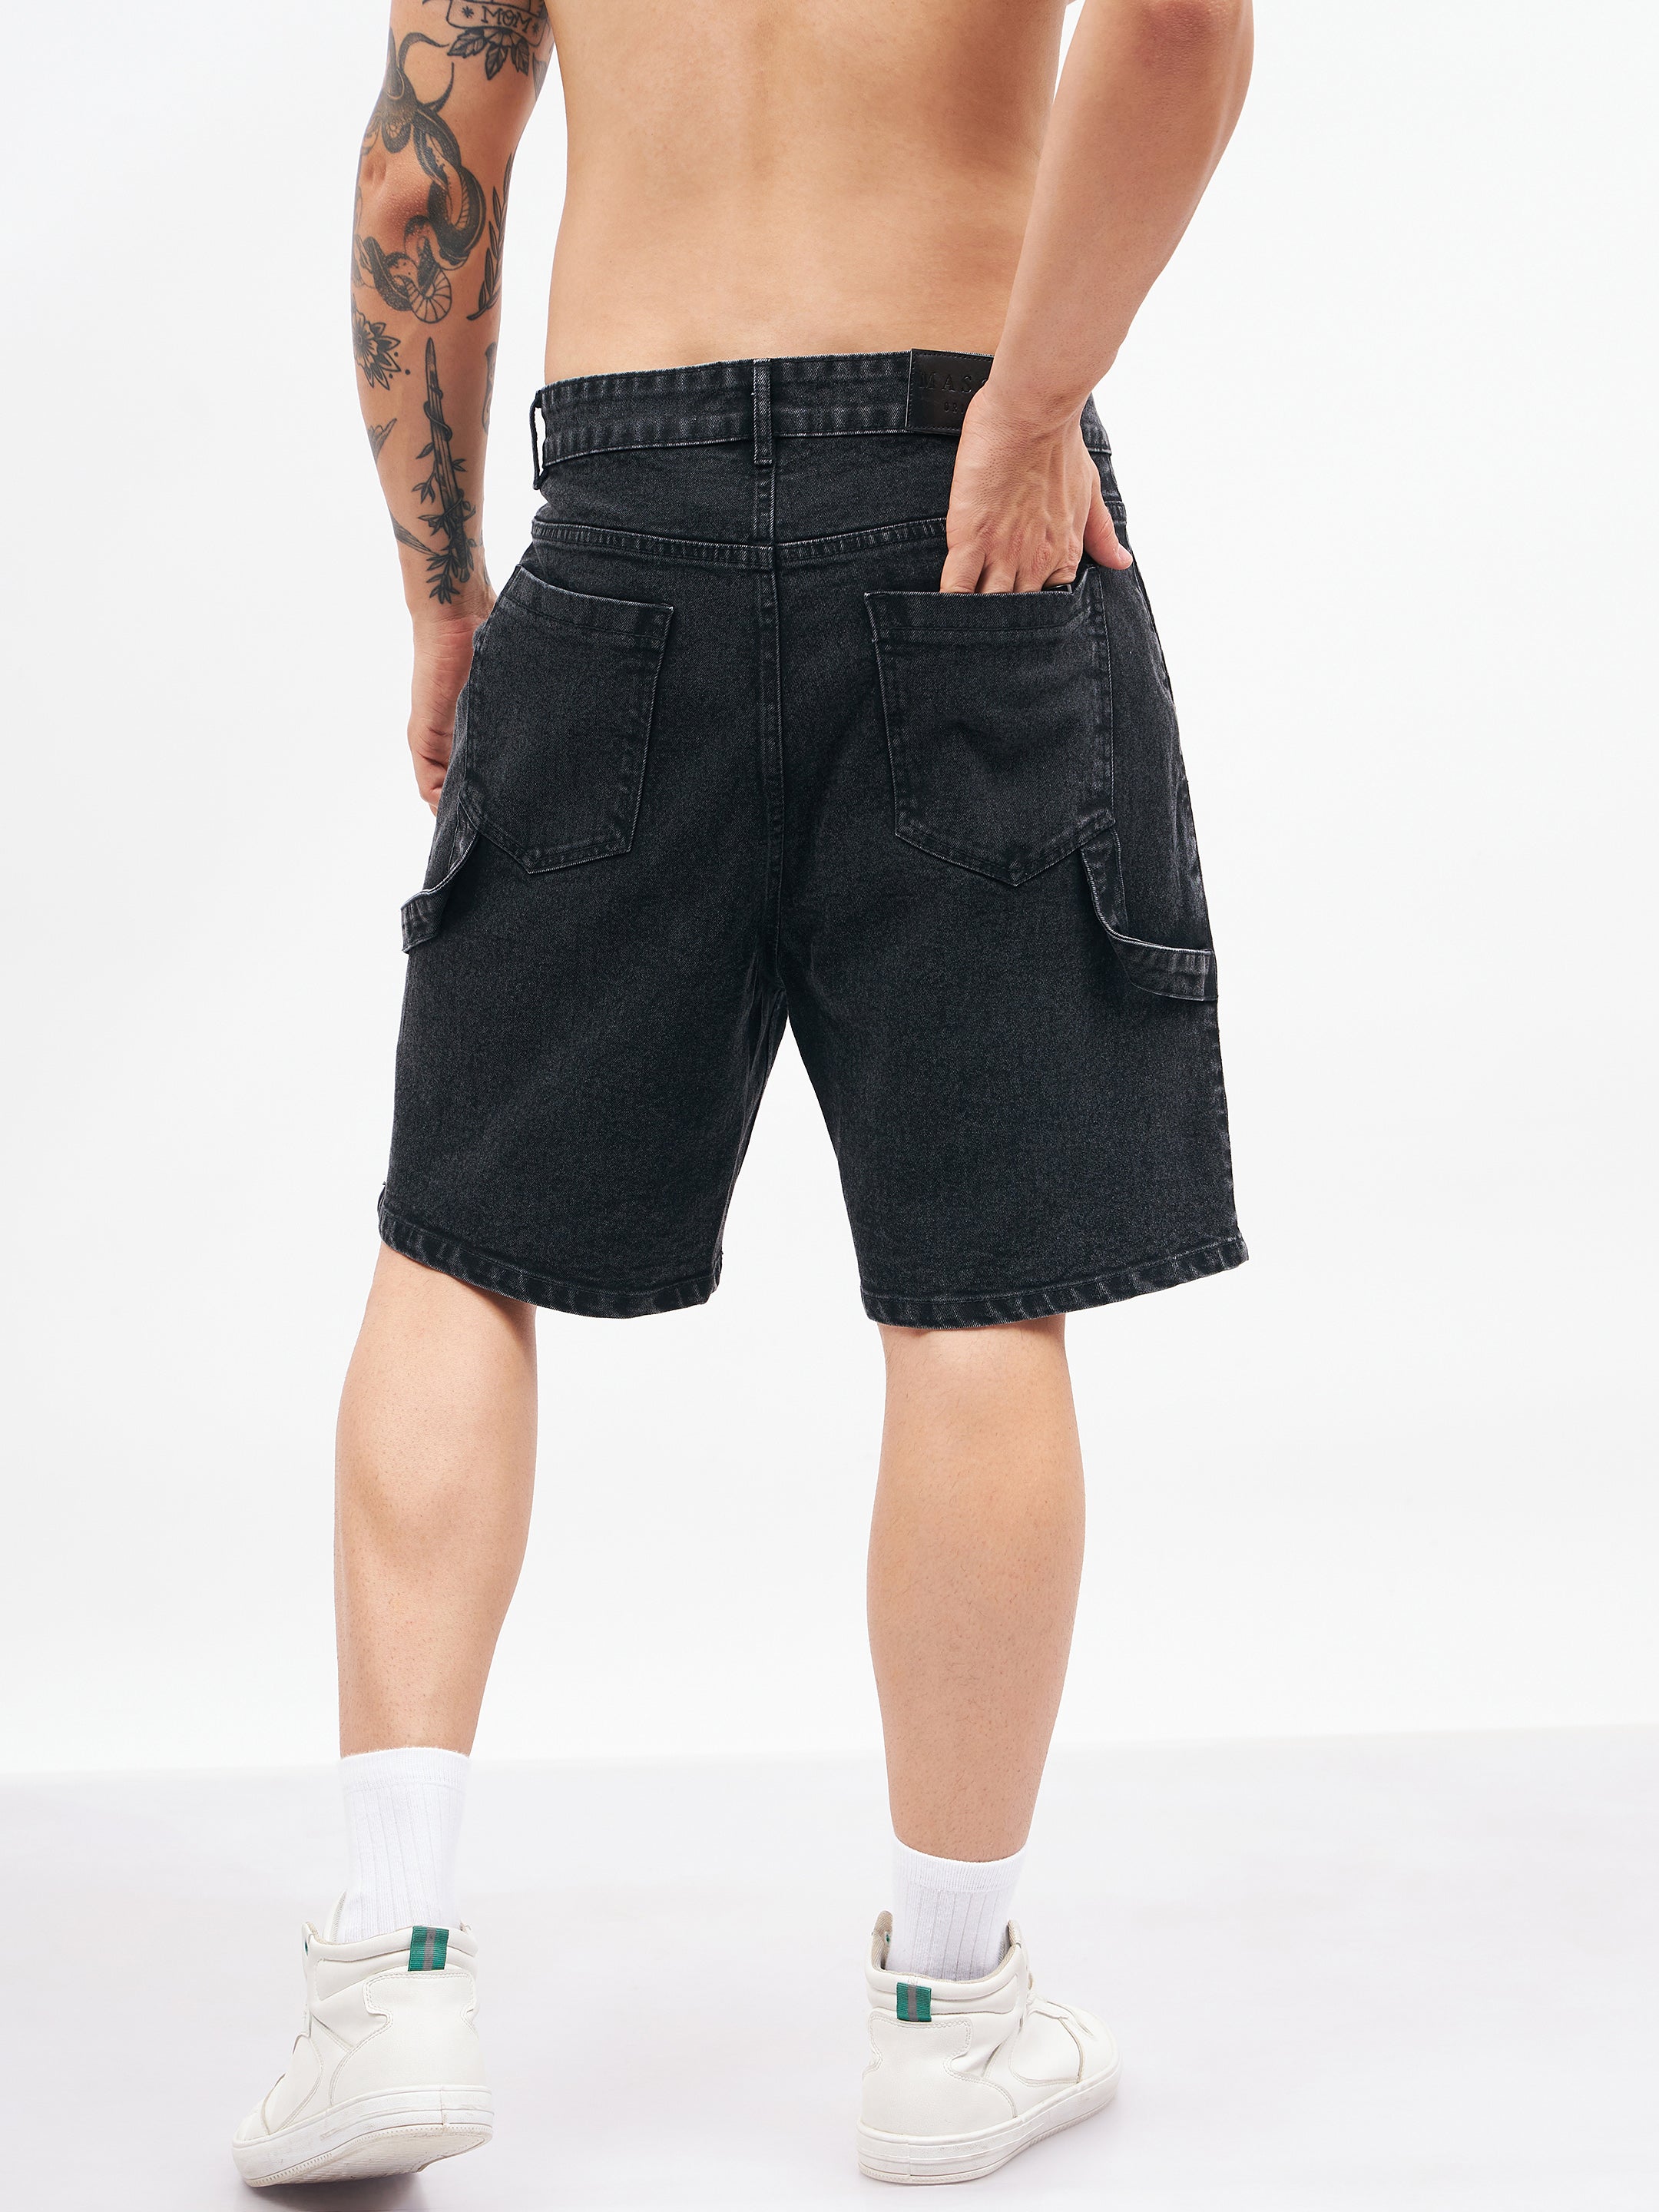 Men's Black Relax Fit Denim Shorts - MASCLN SASSAFRAS